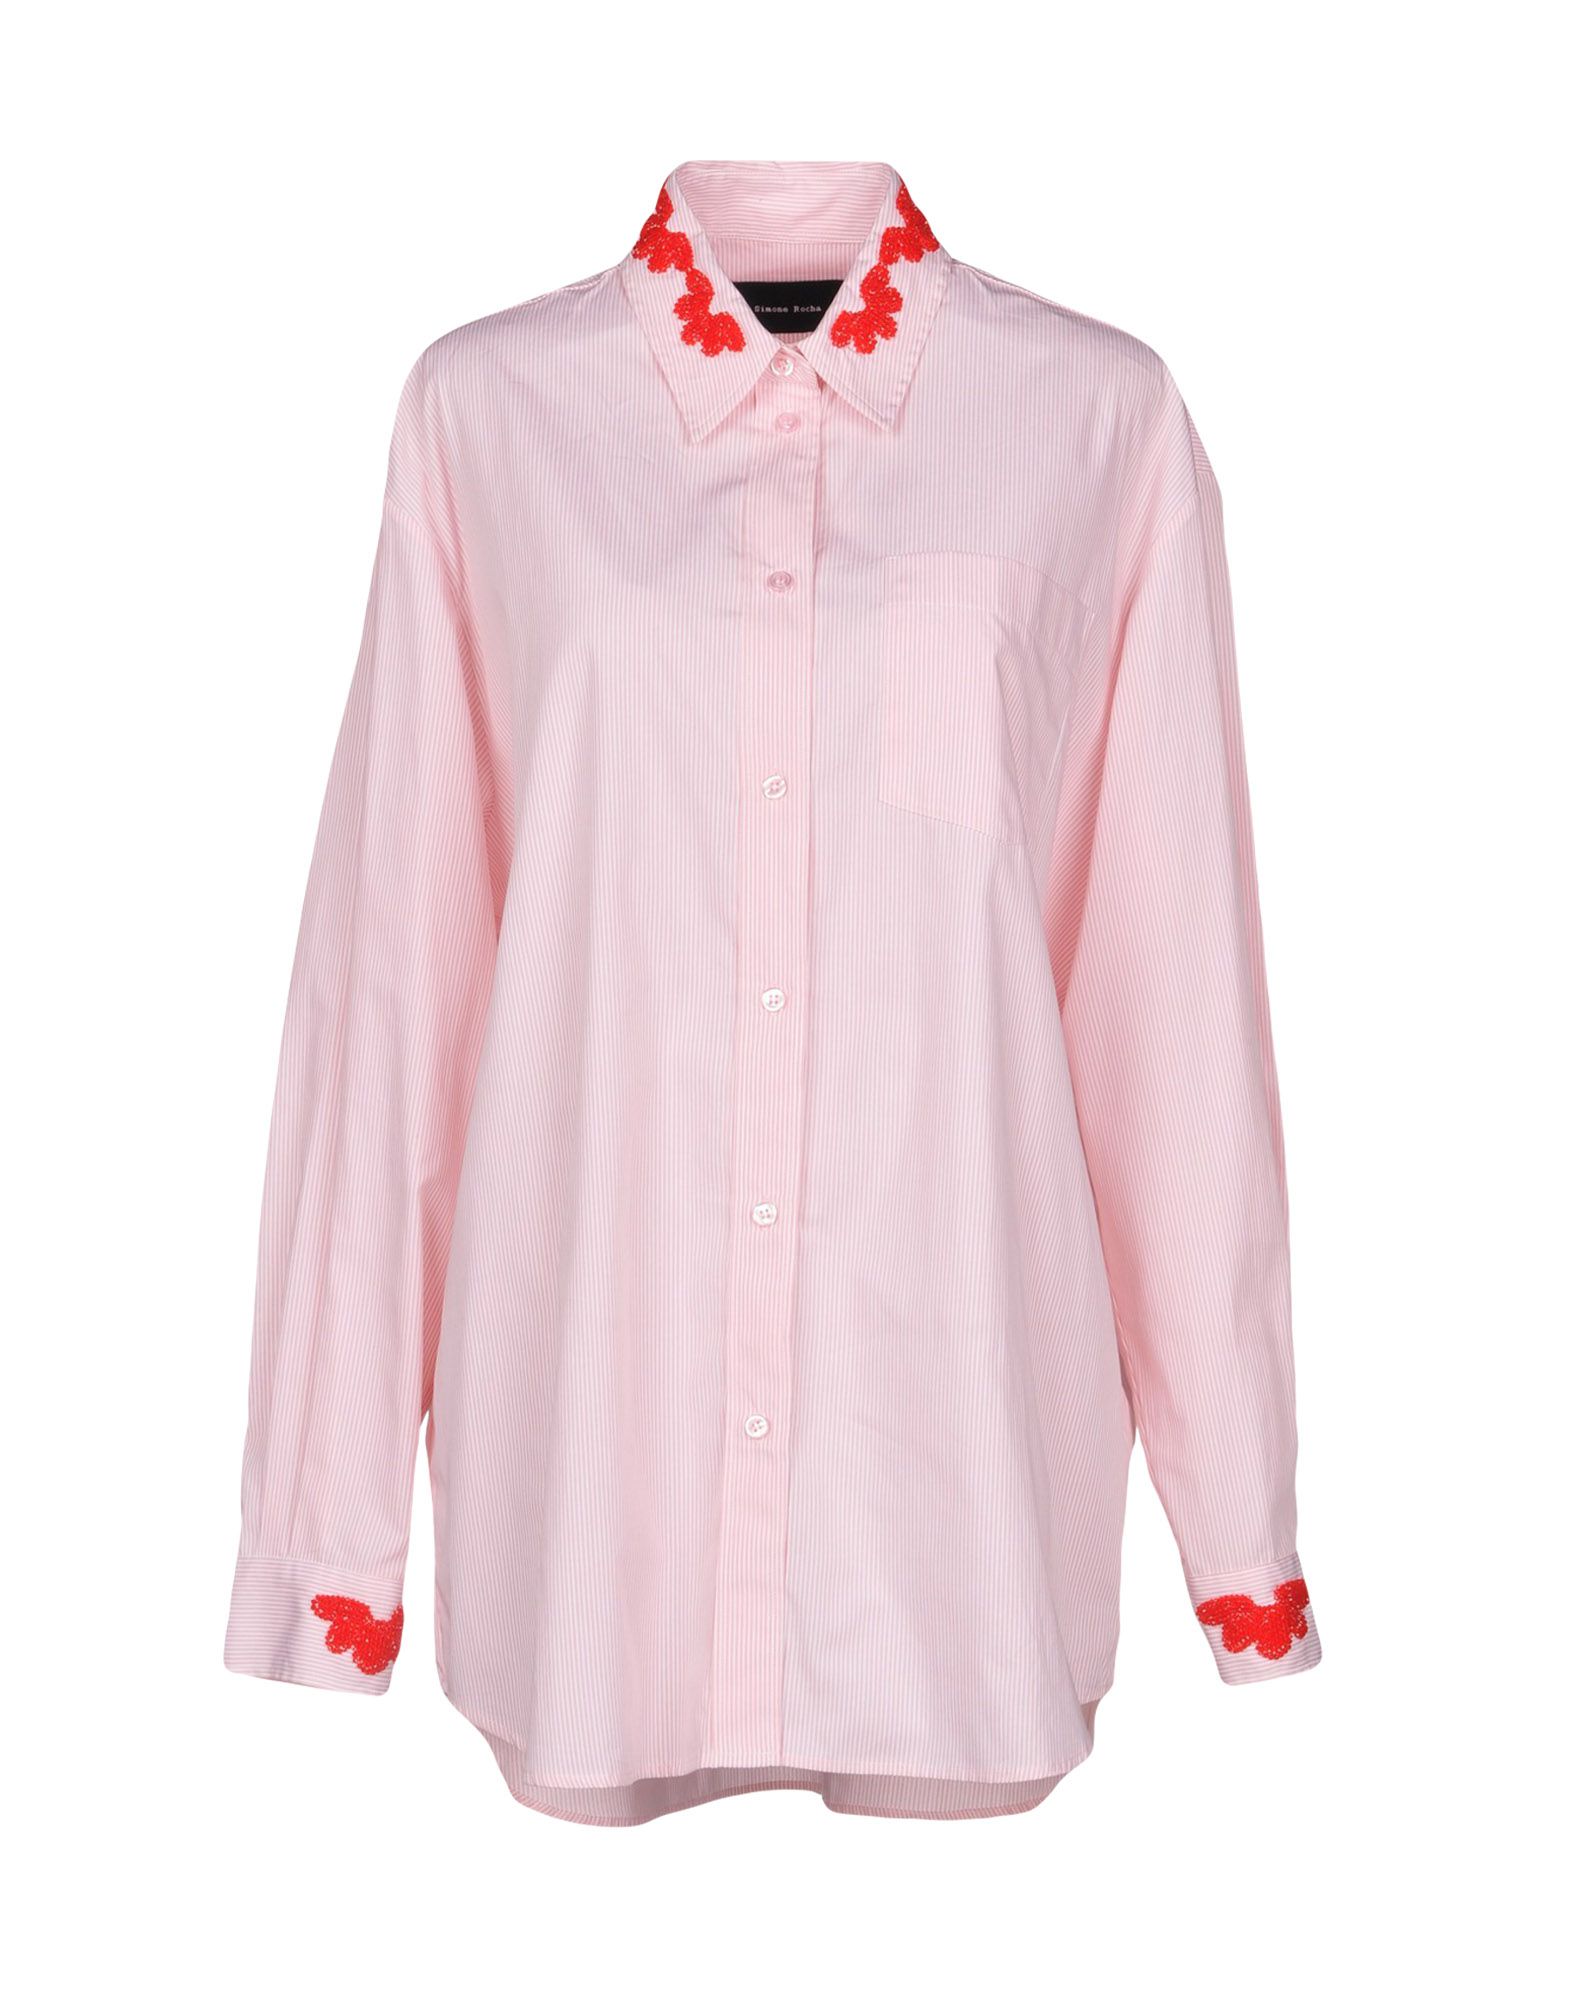 SIMONE ROCHA Striped shirt,38757894JU 6